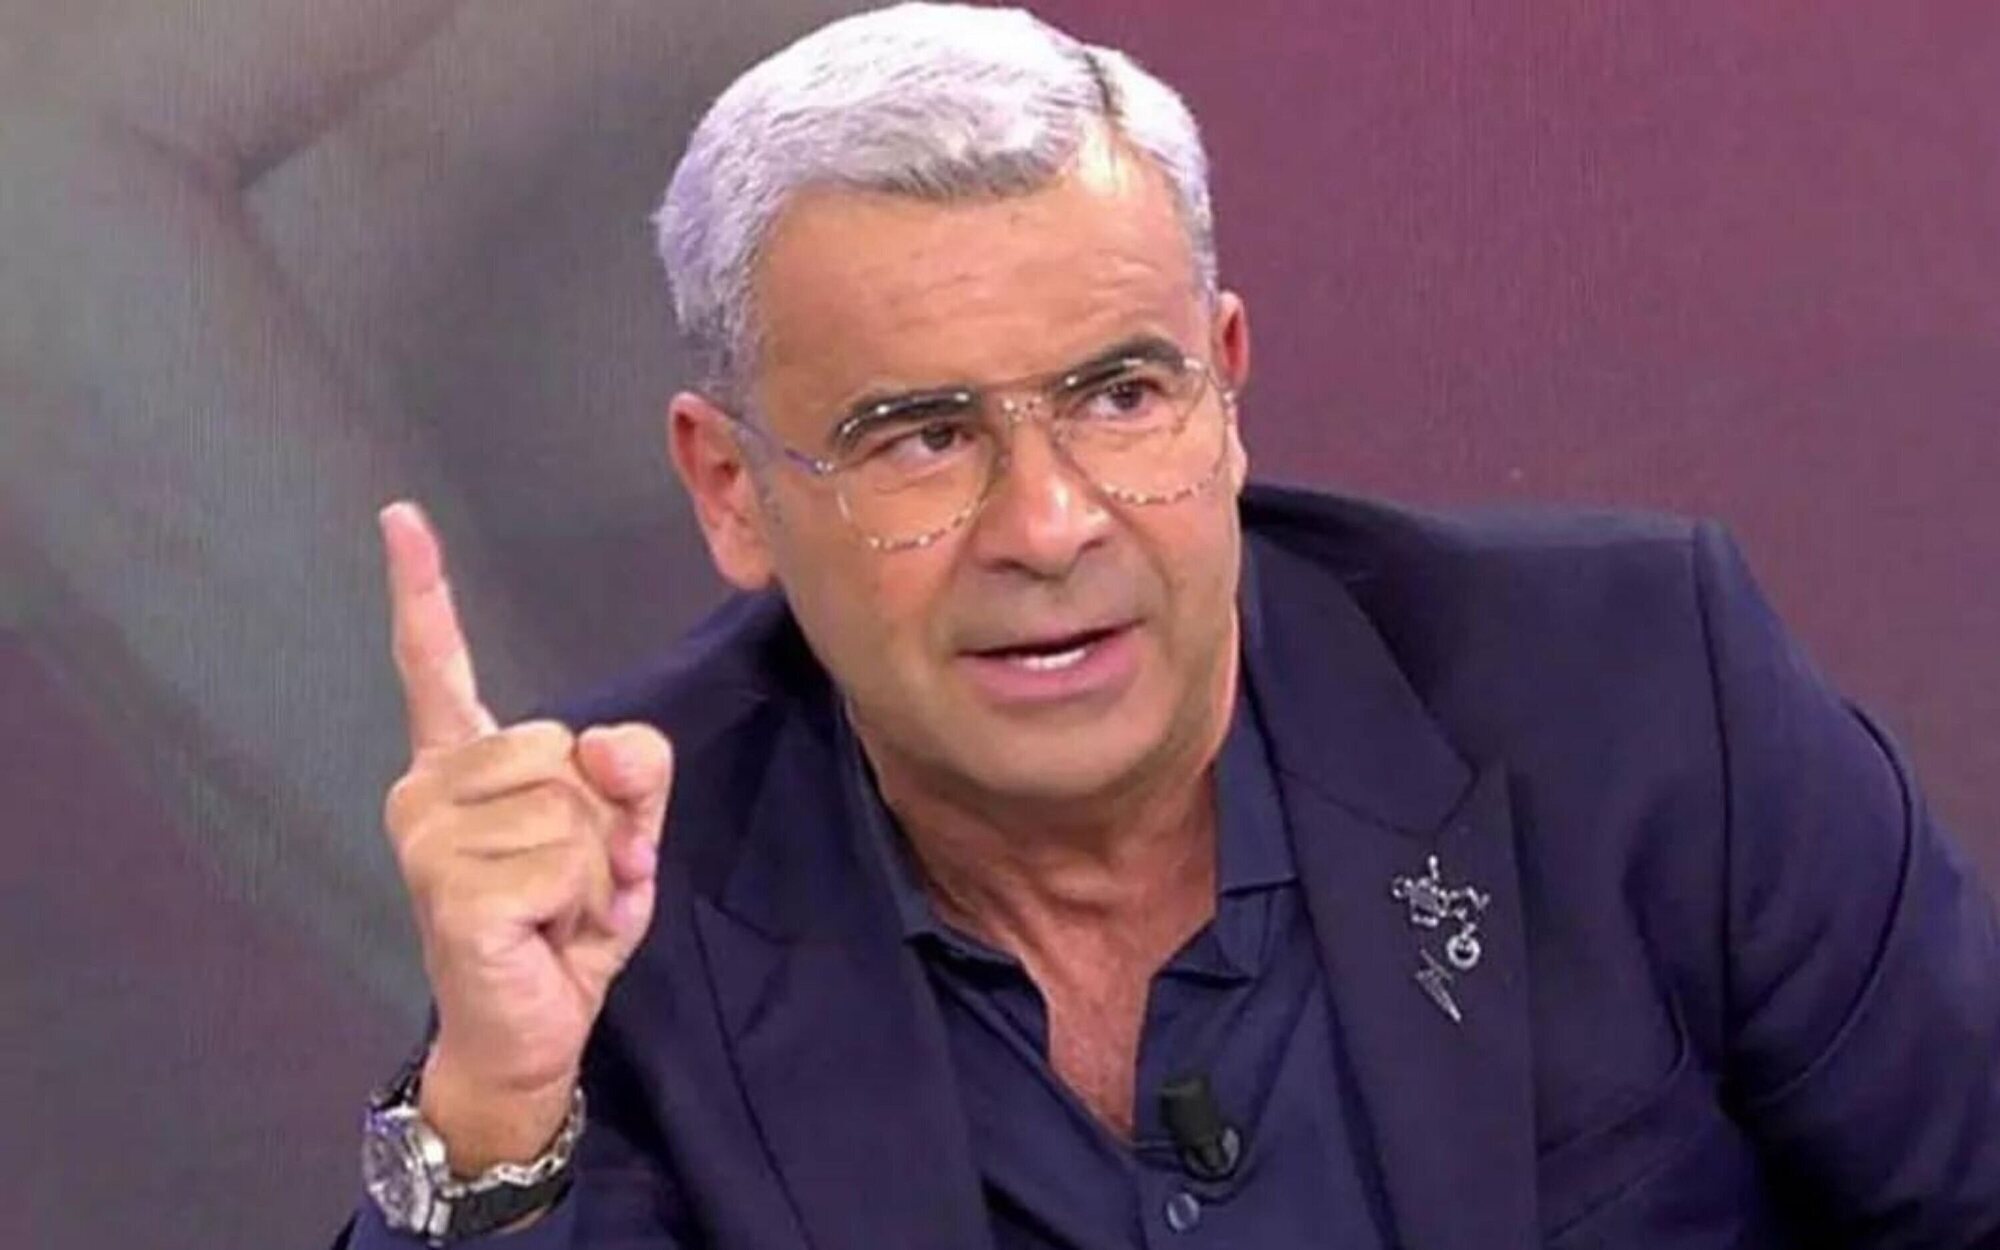 La burla de Jorge Javier Vázquez sobre las audiencias de Antena 3 de "hace años": "No la veía nadie"